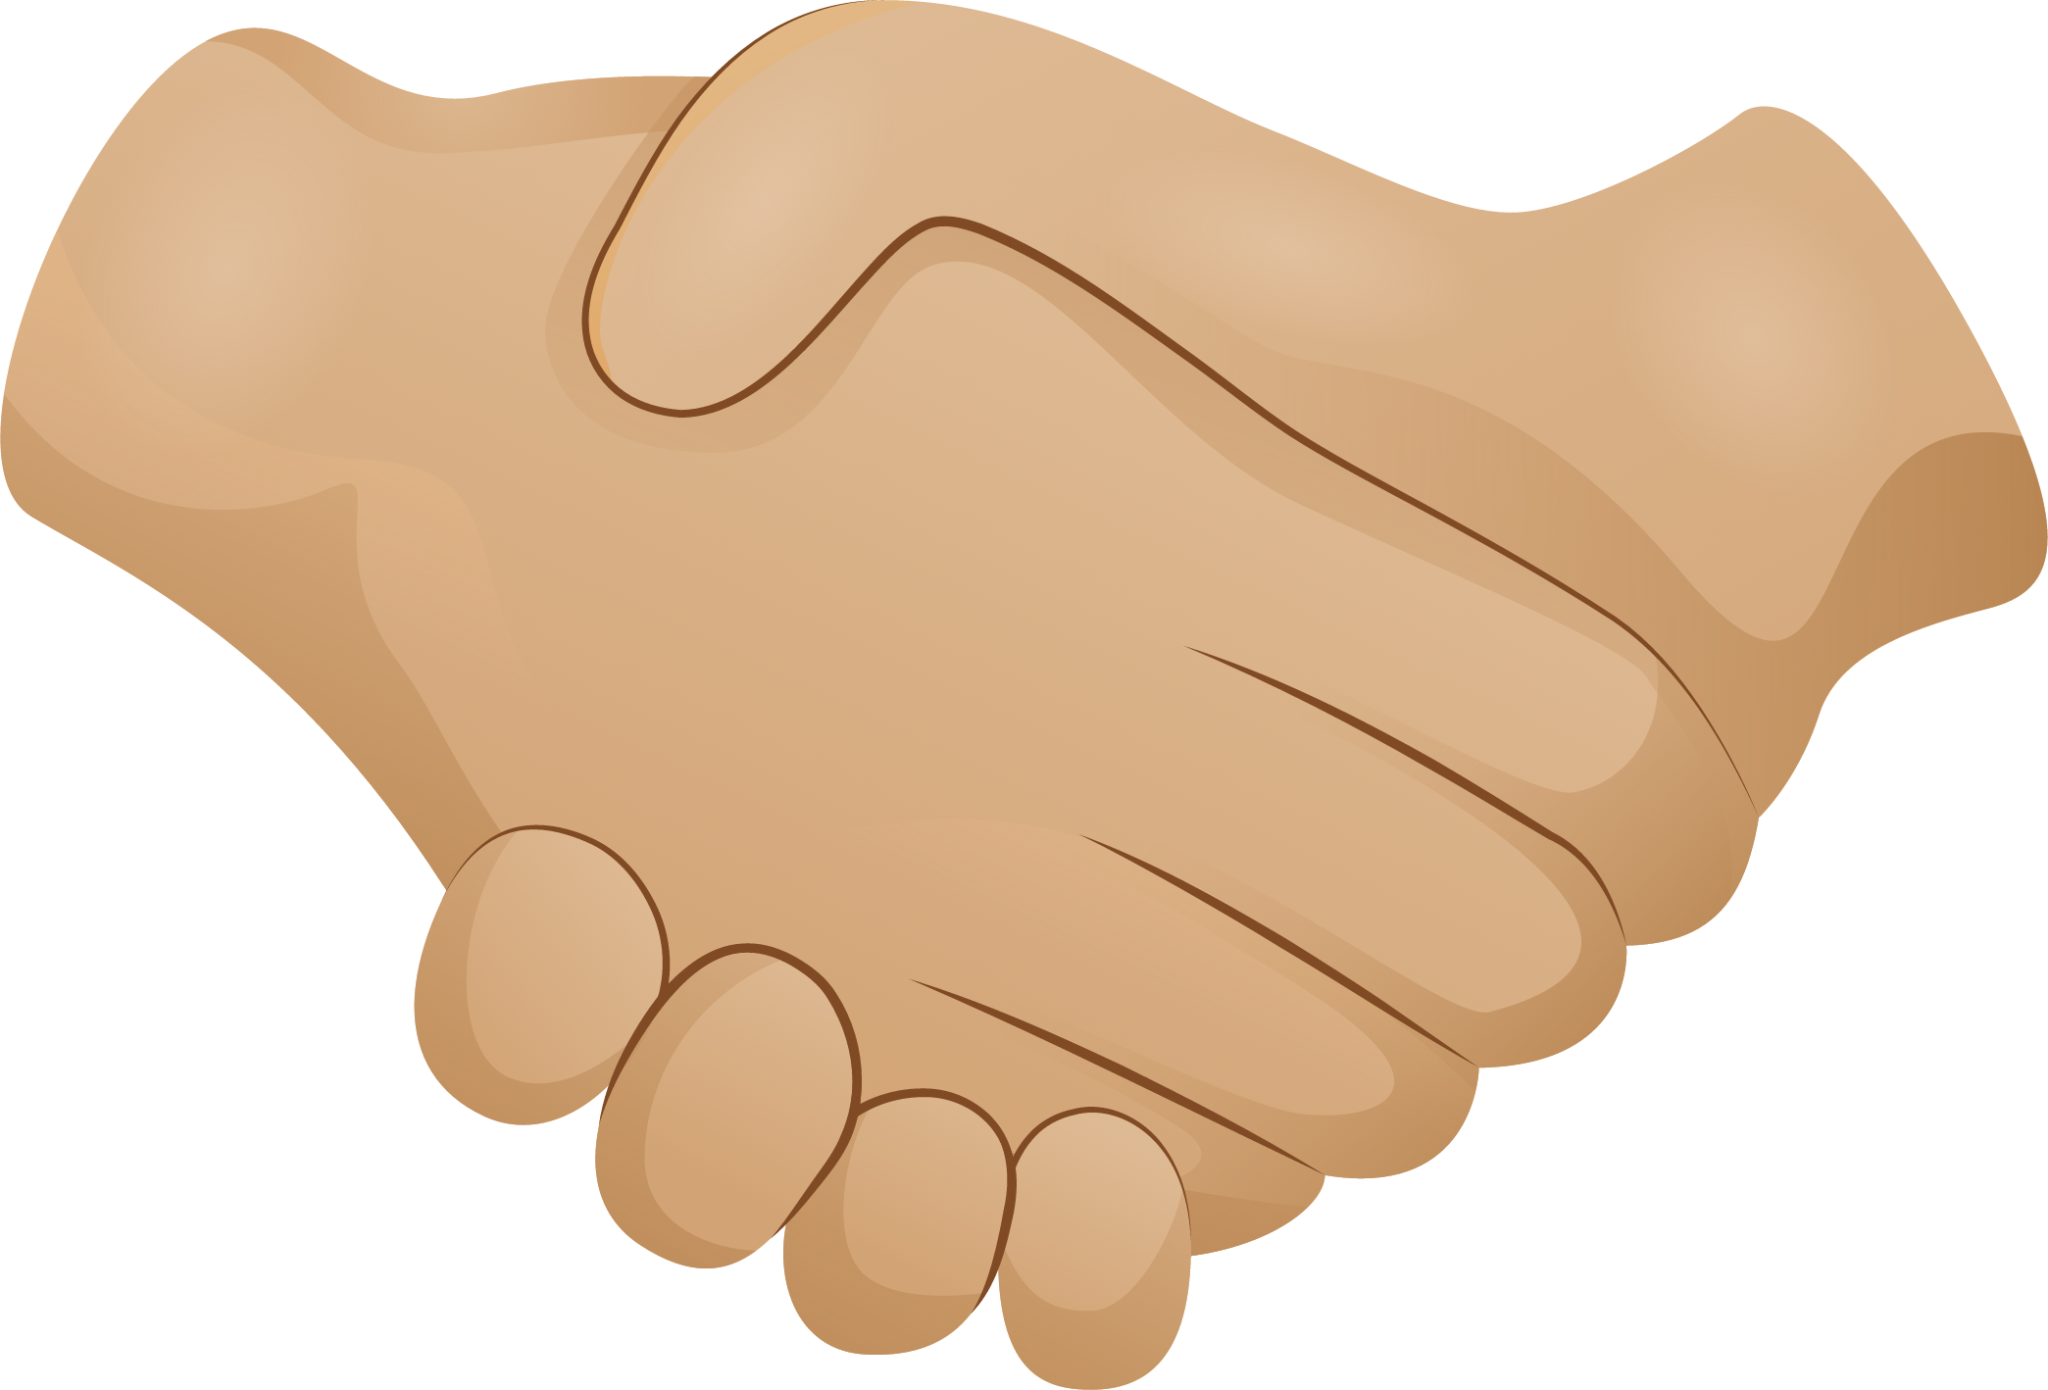 Handshake Emoji 2 Hands Partnership Deal Stock Vector (Royalty